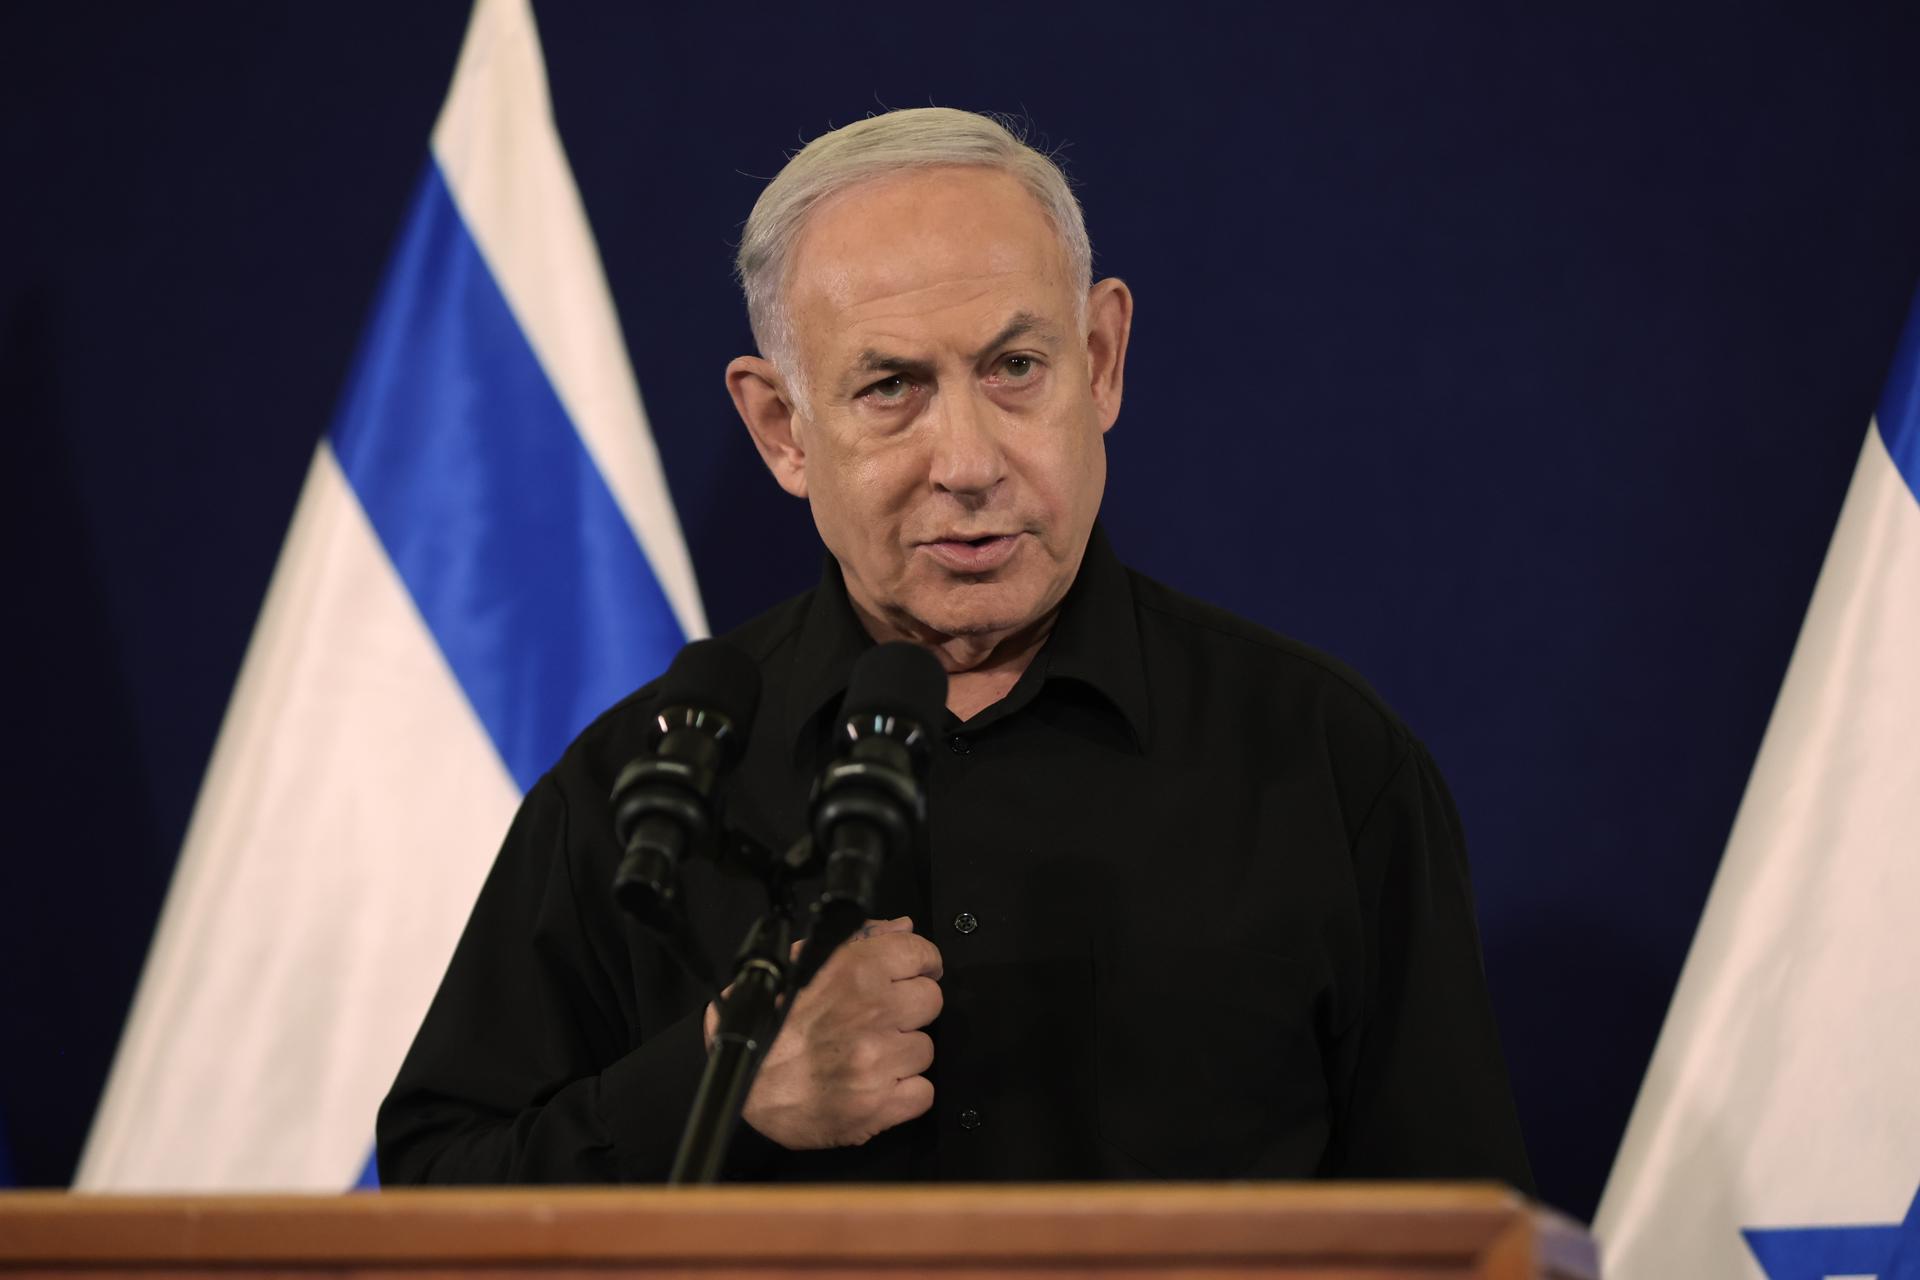 Netanyahu reveló que evalúa posible acuerdo para liberar a rehenes israelíes